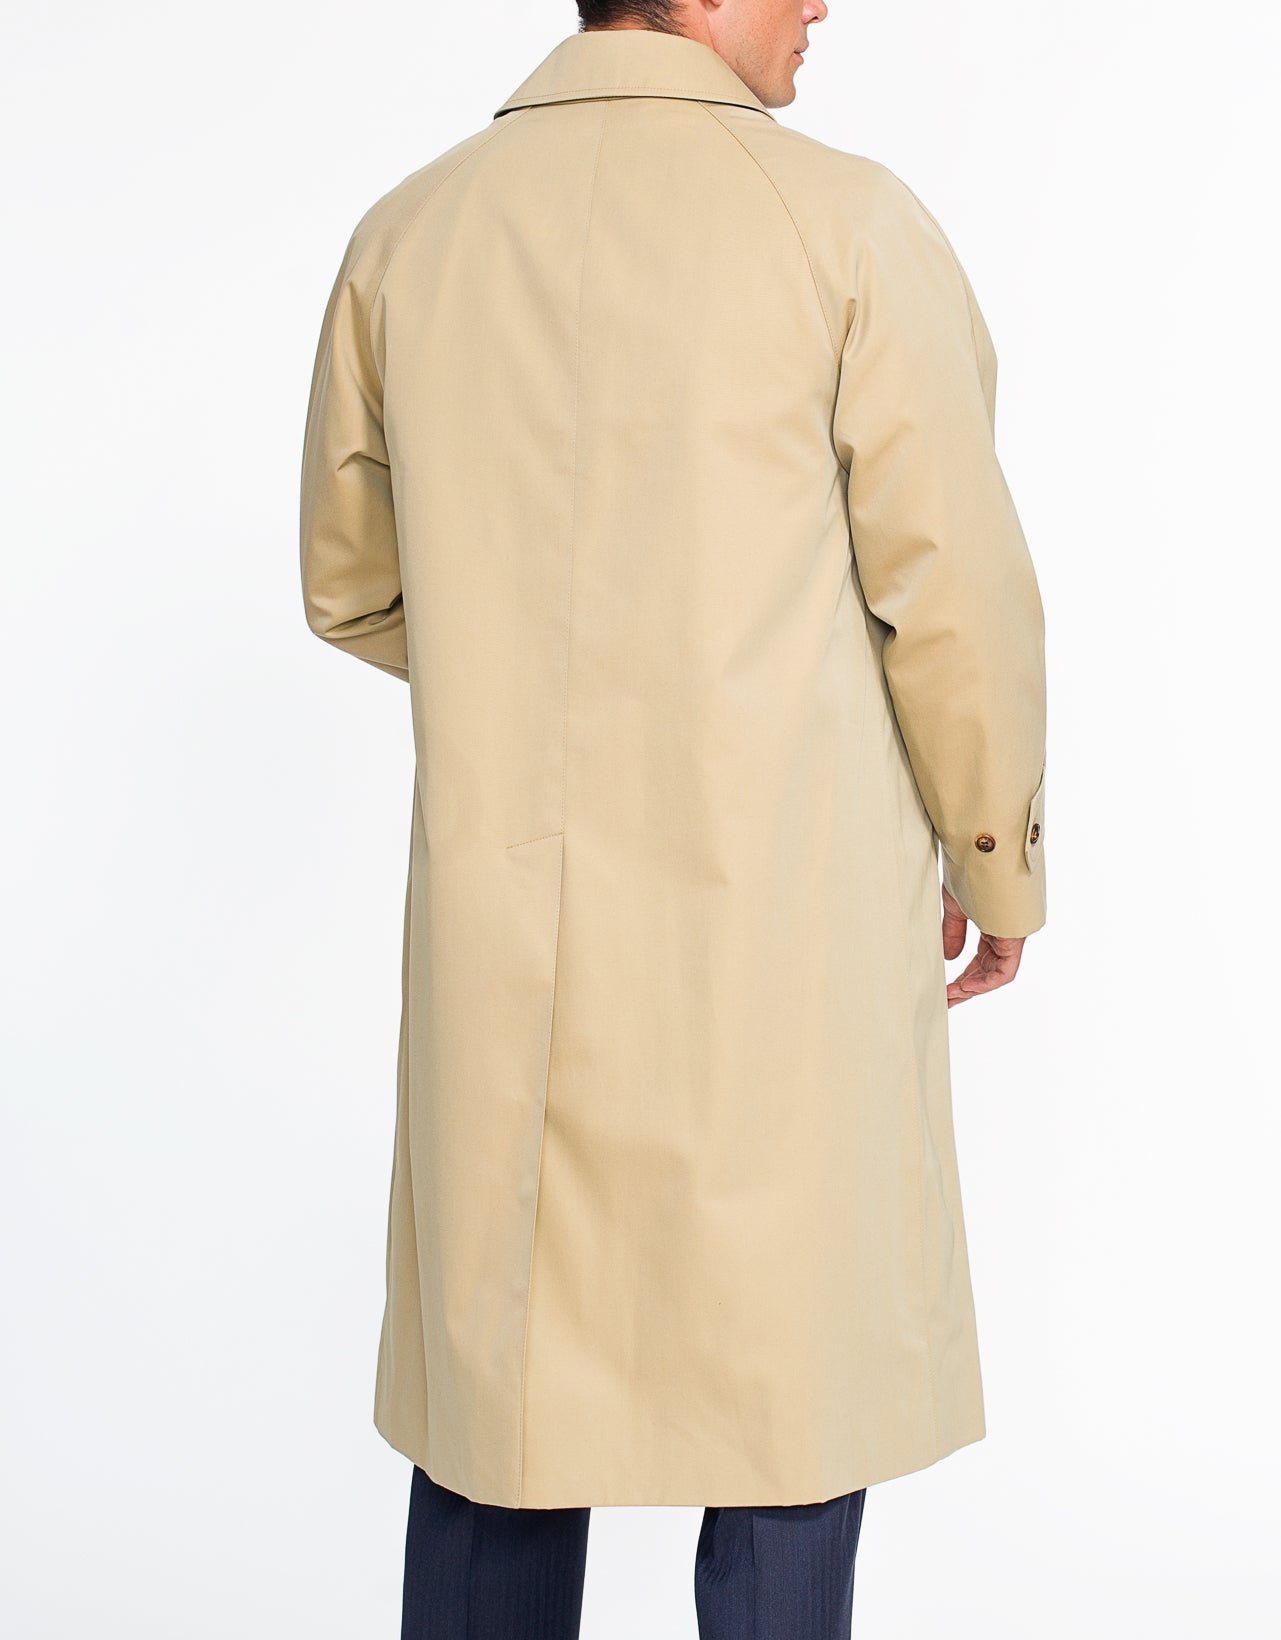 Spencer Rain Coat Tan